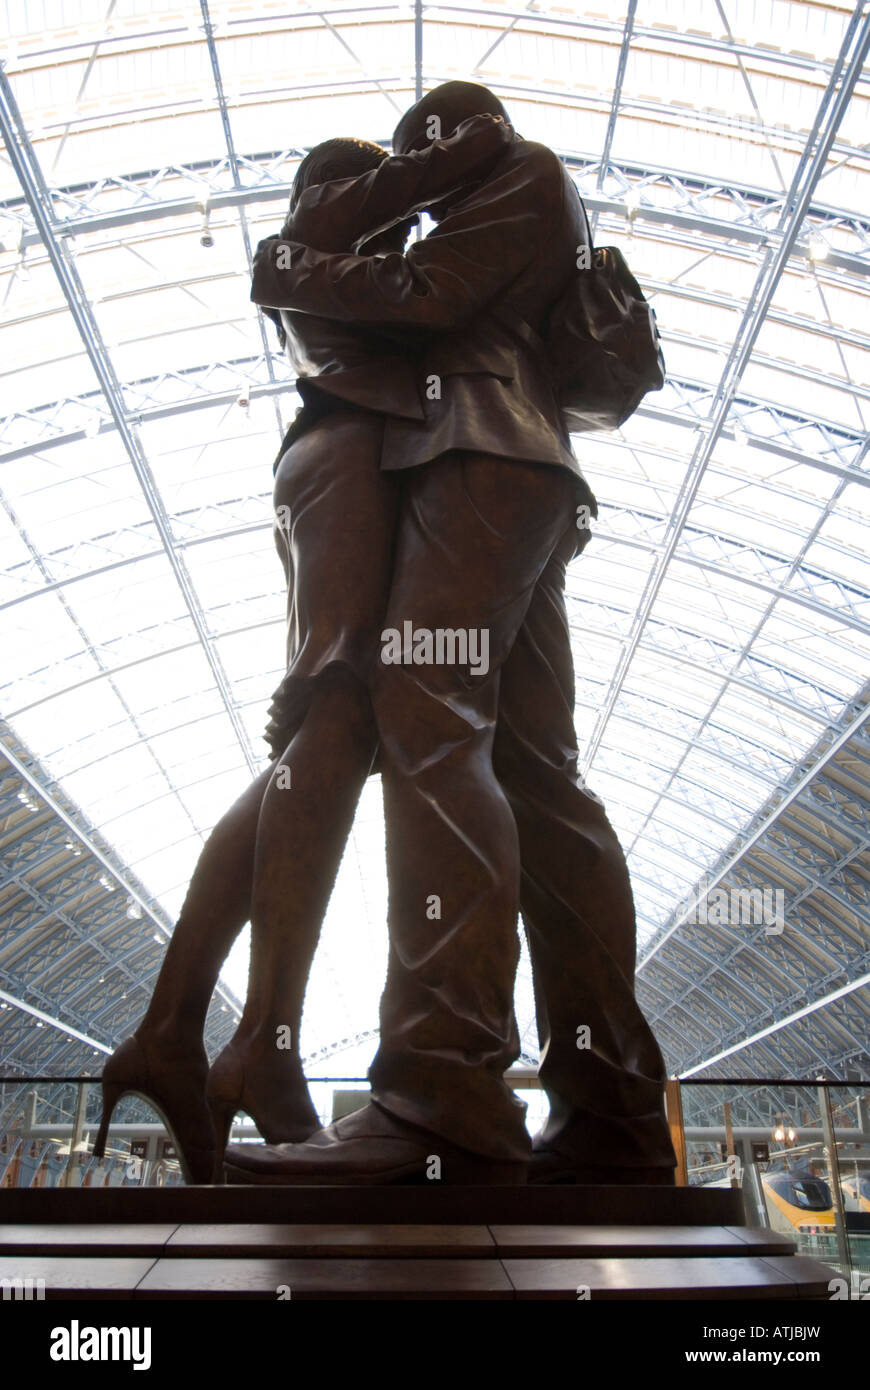 Statua in bronzo del luogo di incontro a St Pancras stazione ferroviaria Londra Inghilterra REGNO UNITO Foto Stock